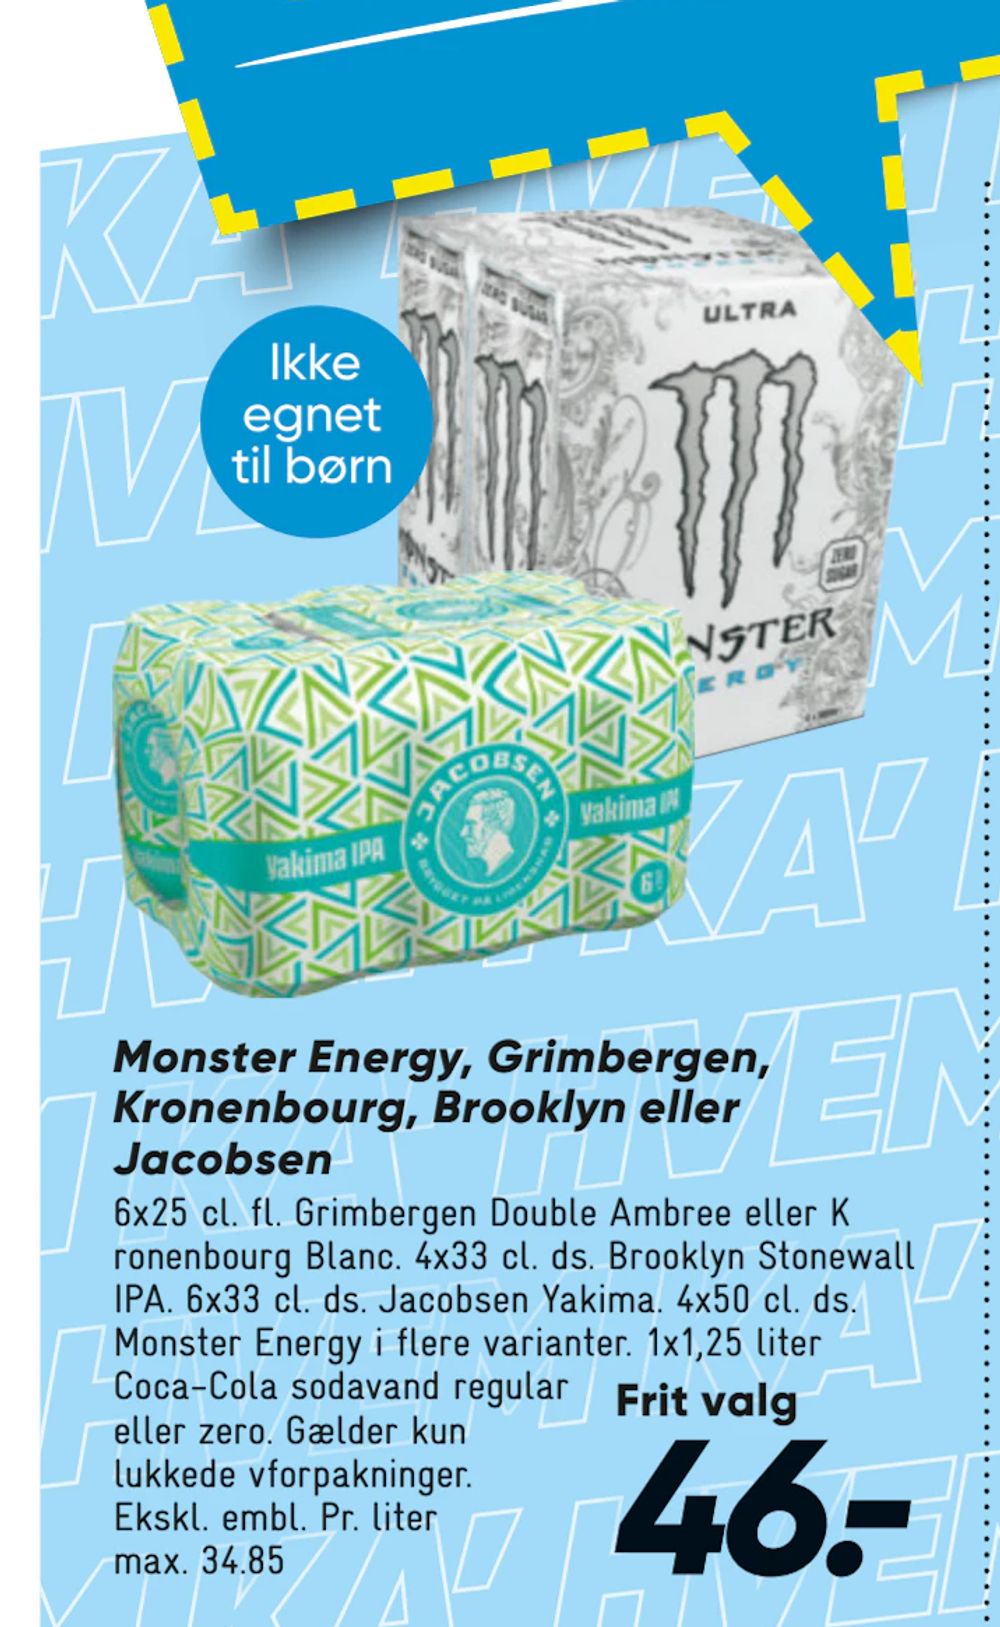 Tilbud på Monster Energy, Grimbergen, Kronenbourg, Brooklyn eller Jacobsen fra Bilka til 46 kr.